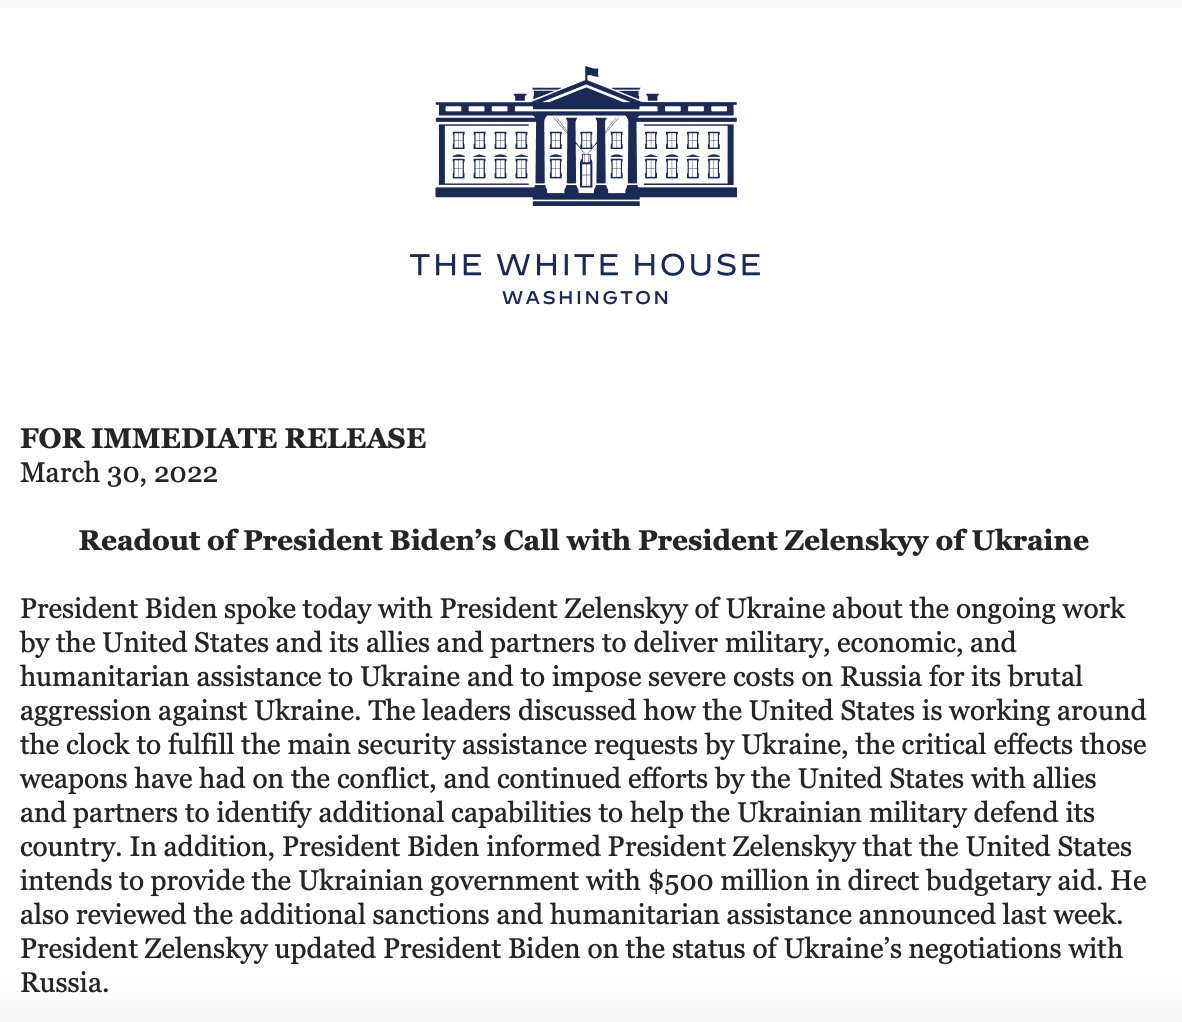 Байден сообщил Зеленскому, что США намерены предоставить Украине дополнительные 500 миллионов долларов помощи